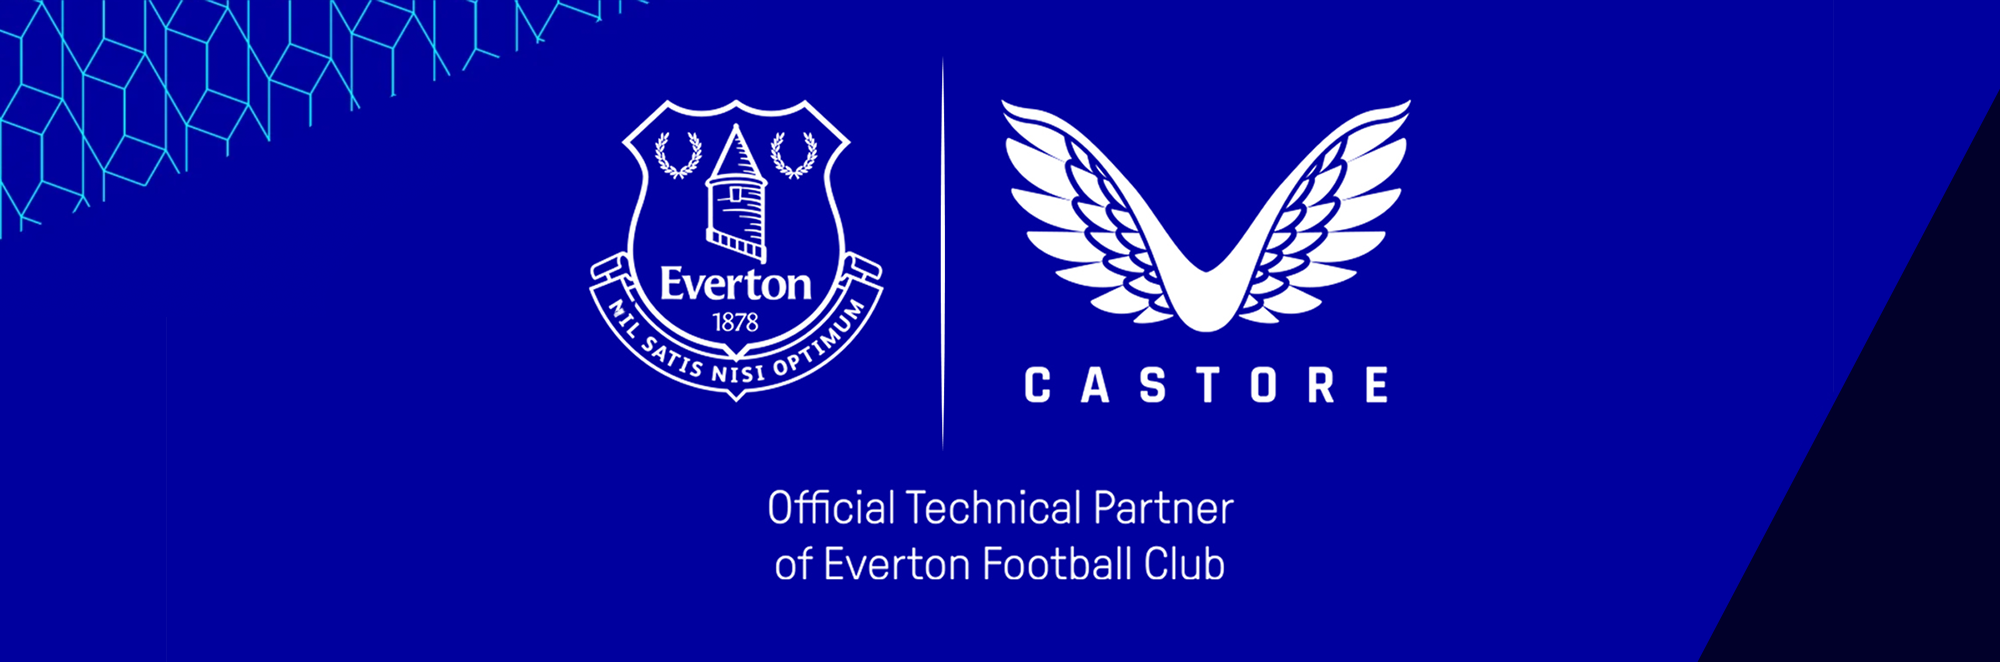 Castore and Everton Partner in Landmark Agreement